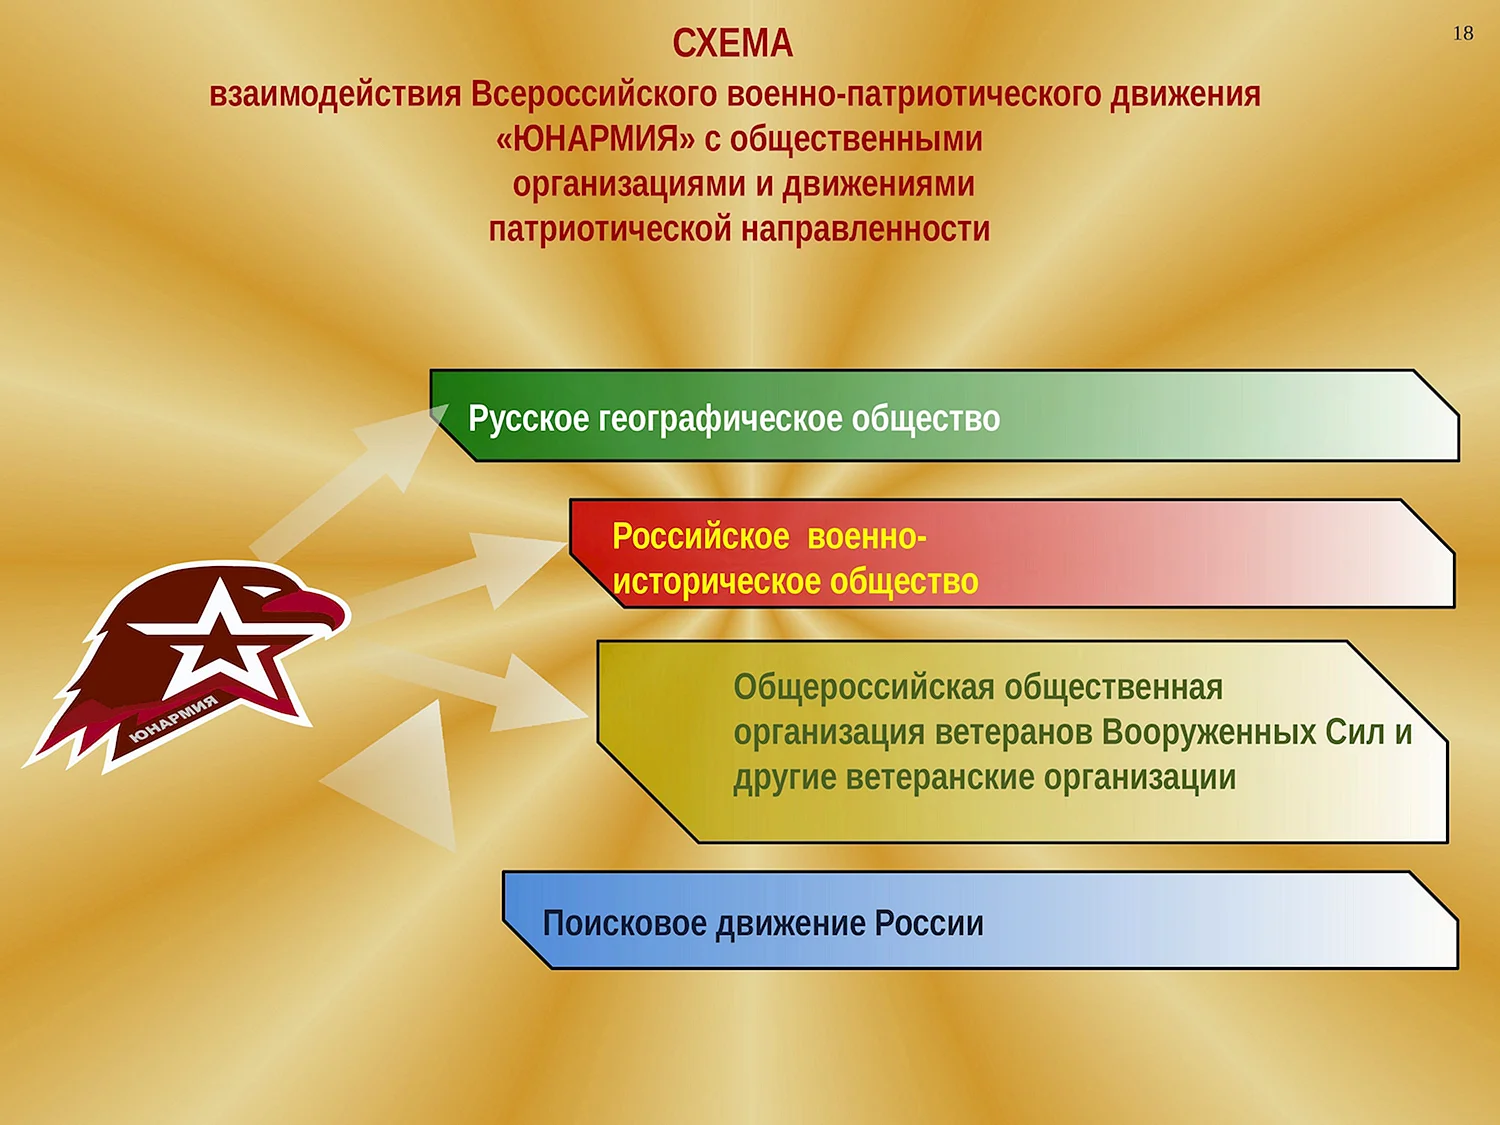 Всероссийское военно-патриотическое Общественное движение Юнармия